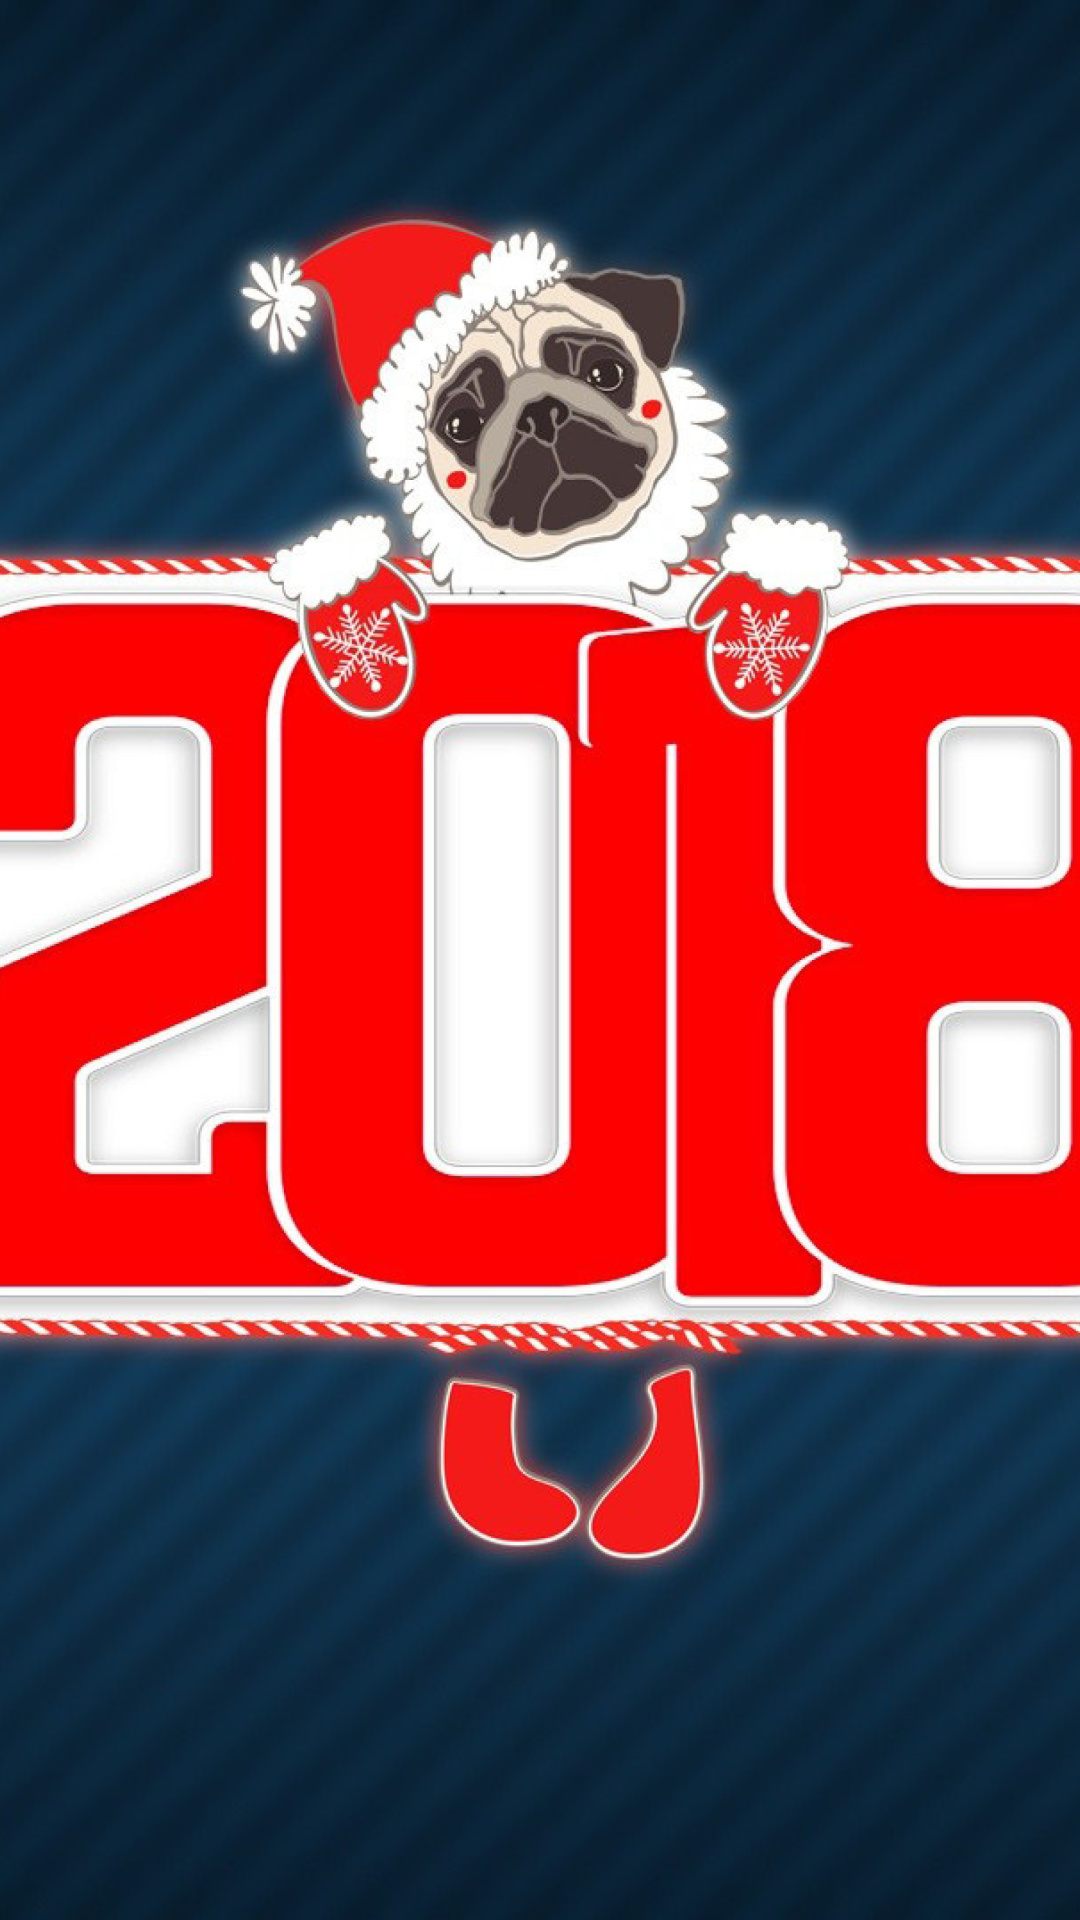 2018 New Year Chinese horoscope year of the Dog screenshot #1 1080x1920